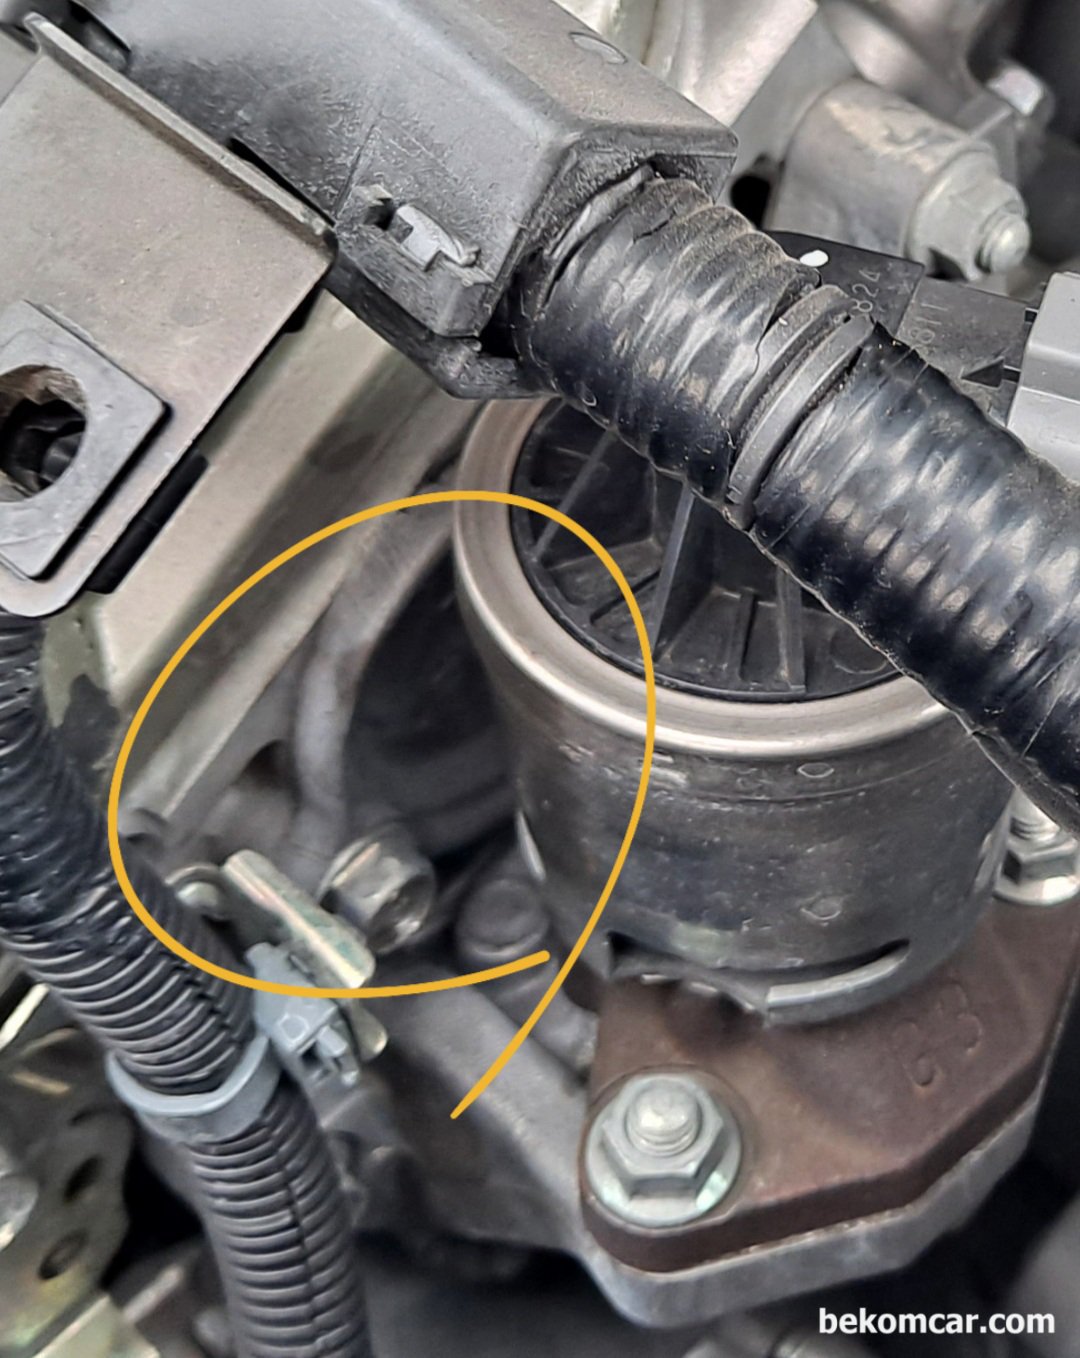 Used car inspection of Honda camshaft seal oil leak, None|bekomcar.com